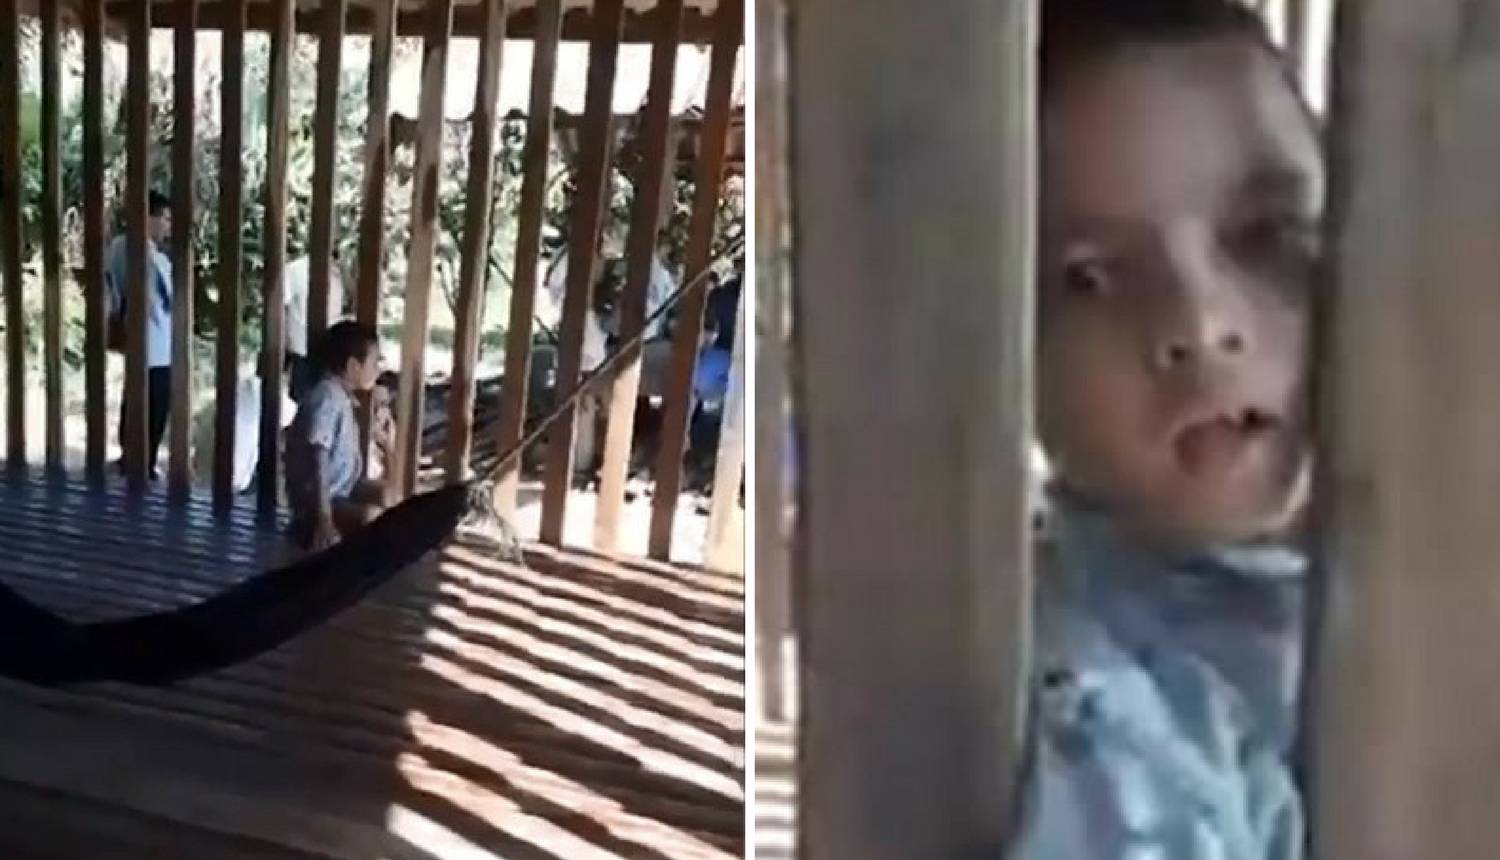 Otac svaki dan prije posla svog sina (9) stavi u - drveni kavez!